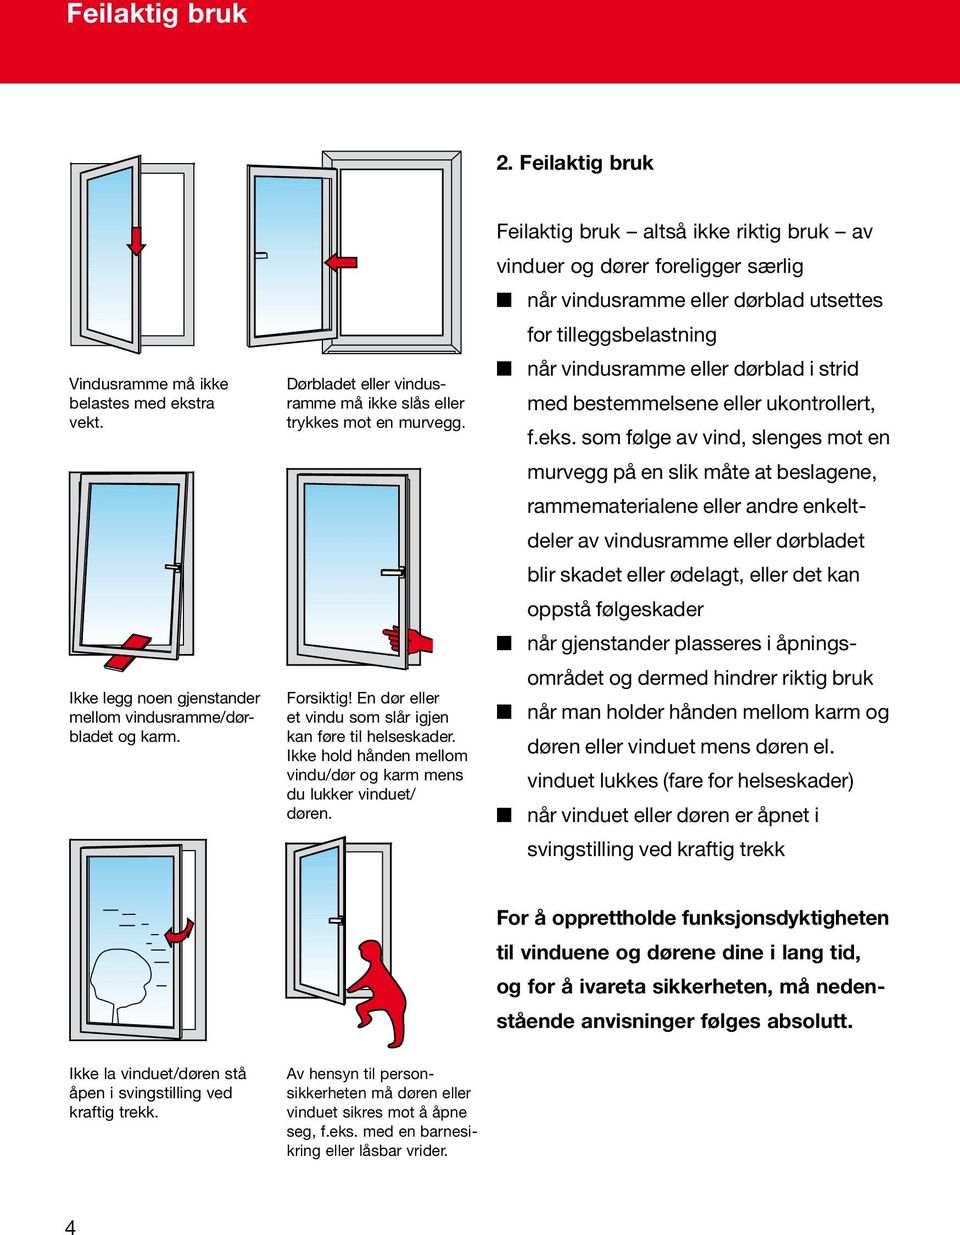 Feilaktig bruk altså ikke riktig bruk av vinduer og dører foreligger særlig når vindusramme eller dørblad utsettes for tilleggsbelastning når vindusramme eller dørblad i strid med bestemmelsene eller